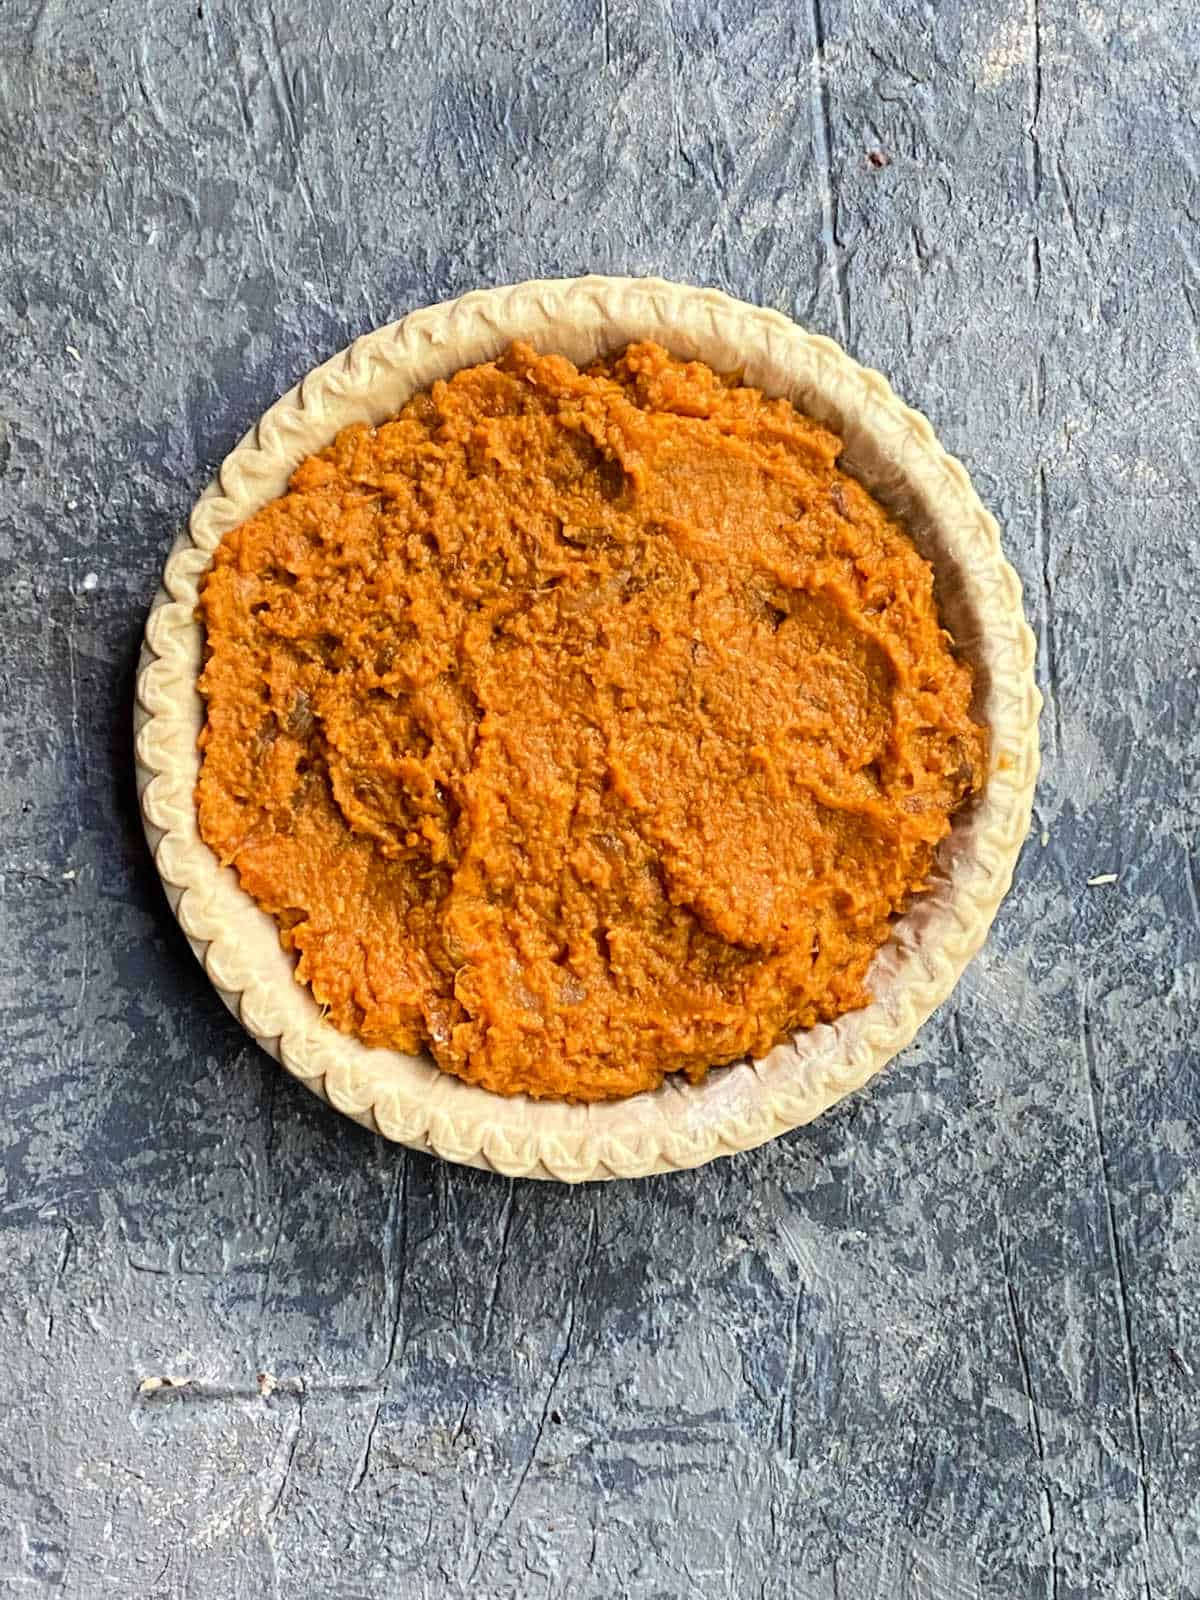 sweet potato pie filling in a crust